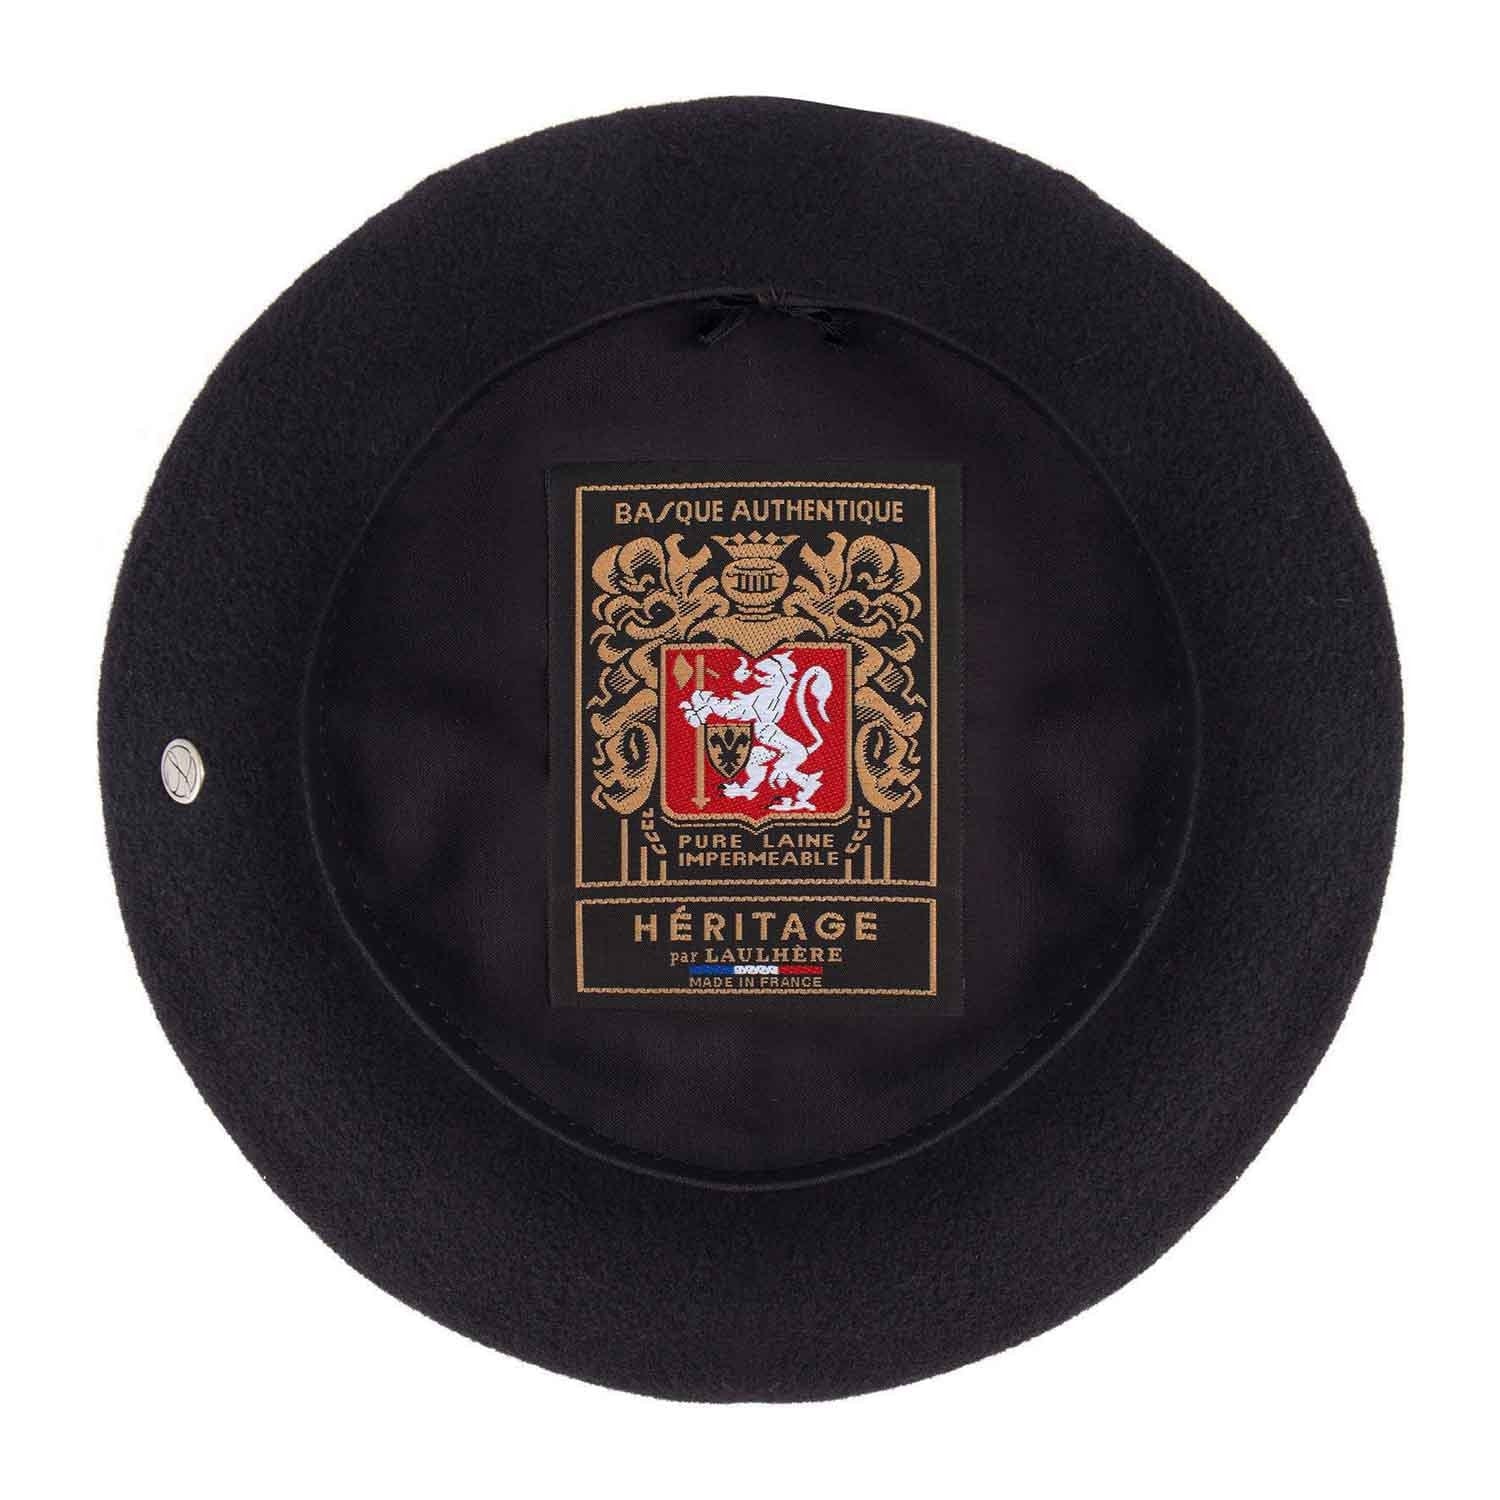 Laulhere Basque Authentique 10" wool beret